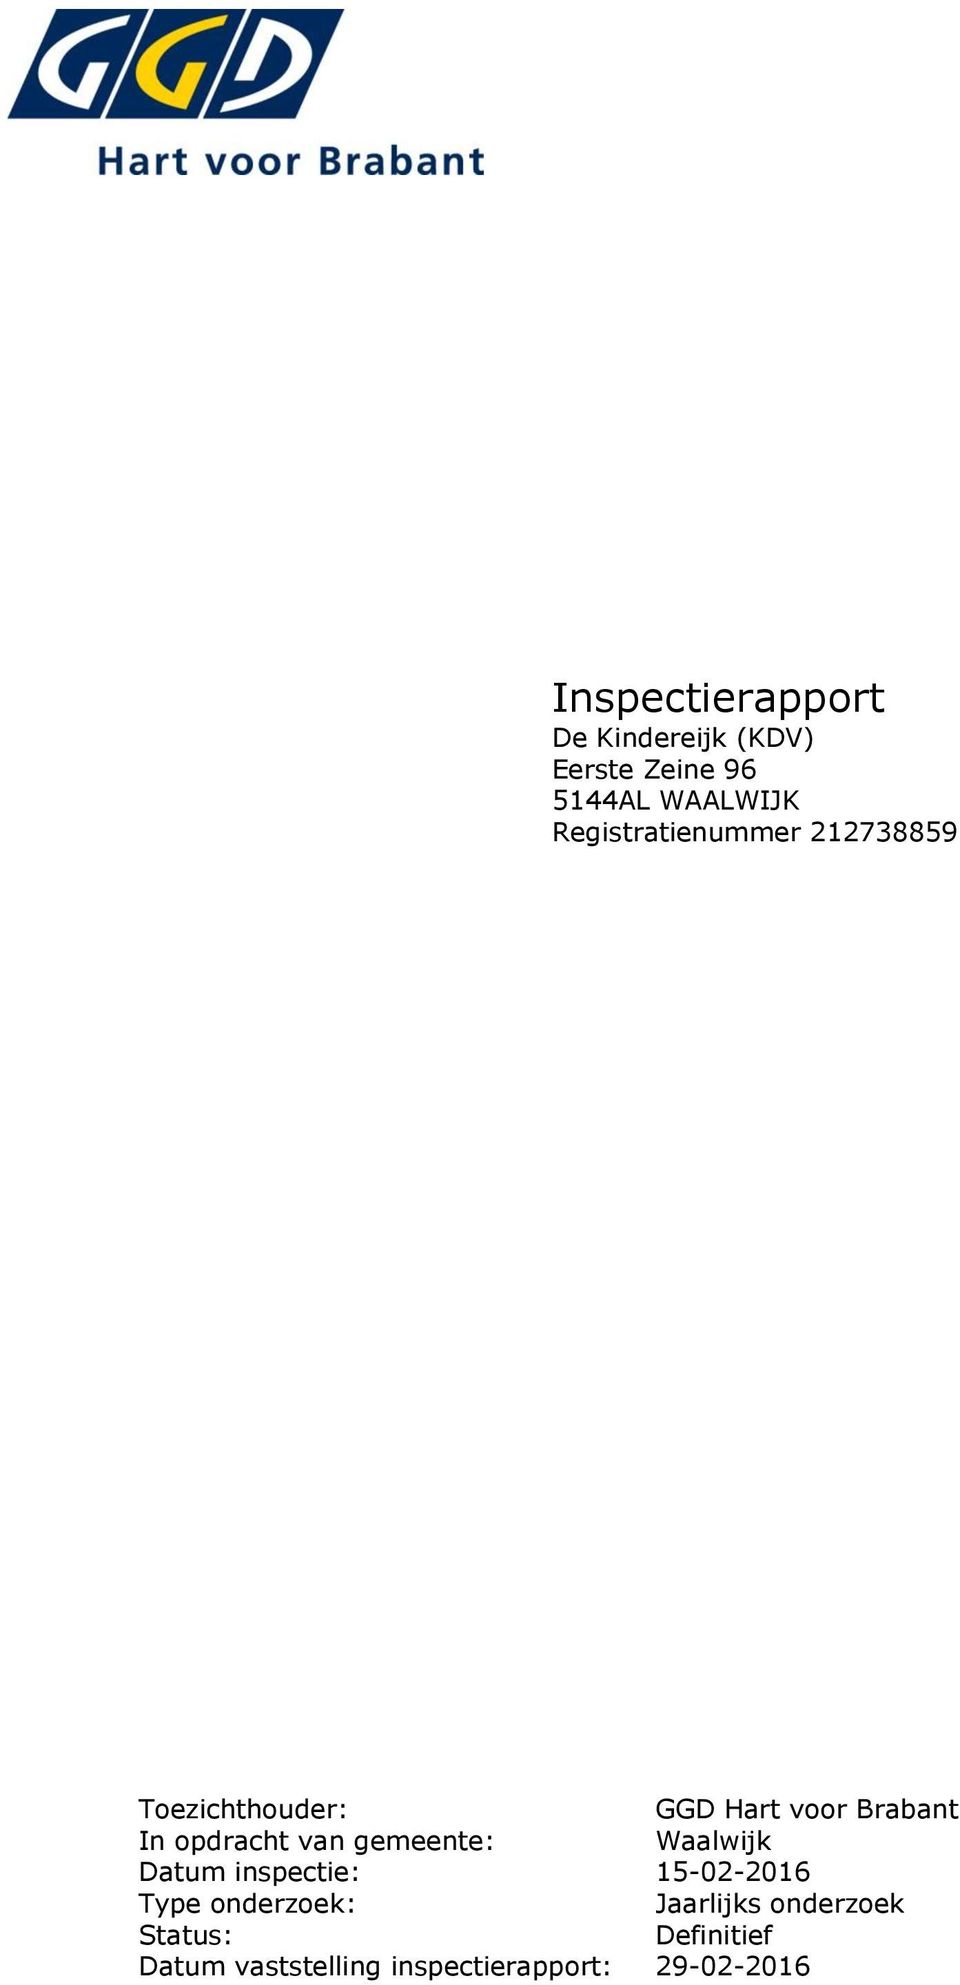 opdracht van gemeente: Waalwijk Datum inspectie: 15-02-2016 Type onderzoek